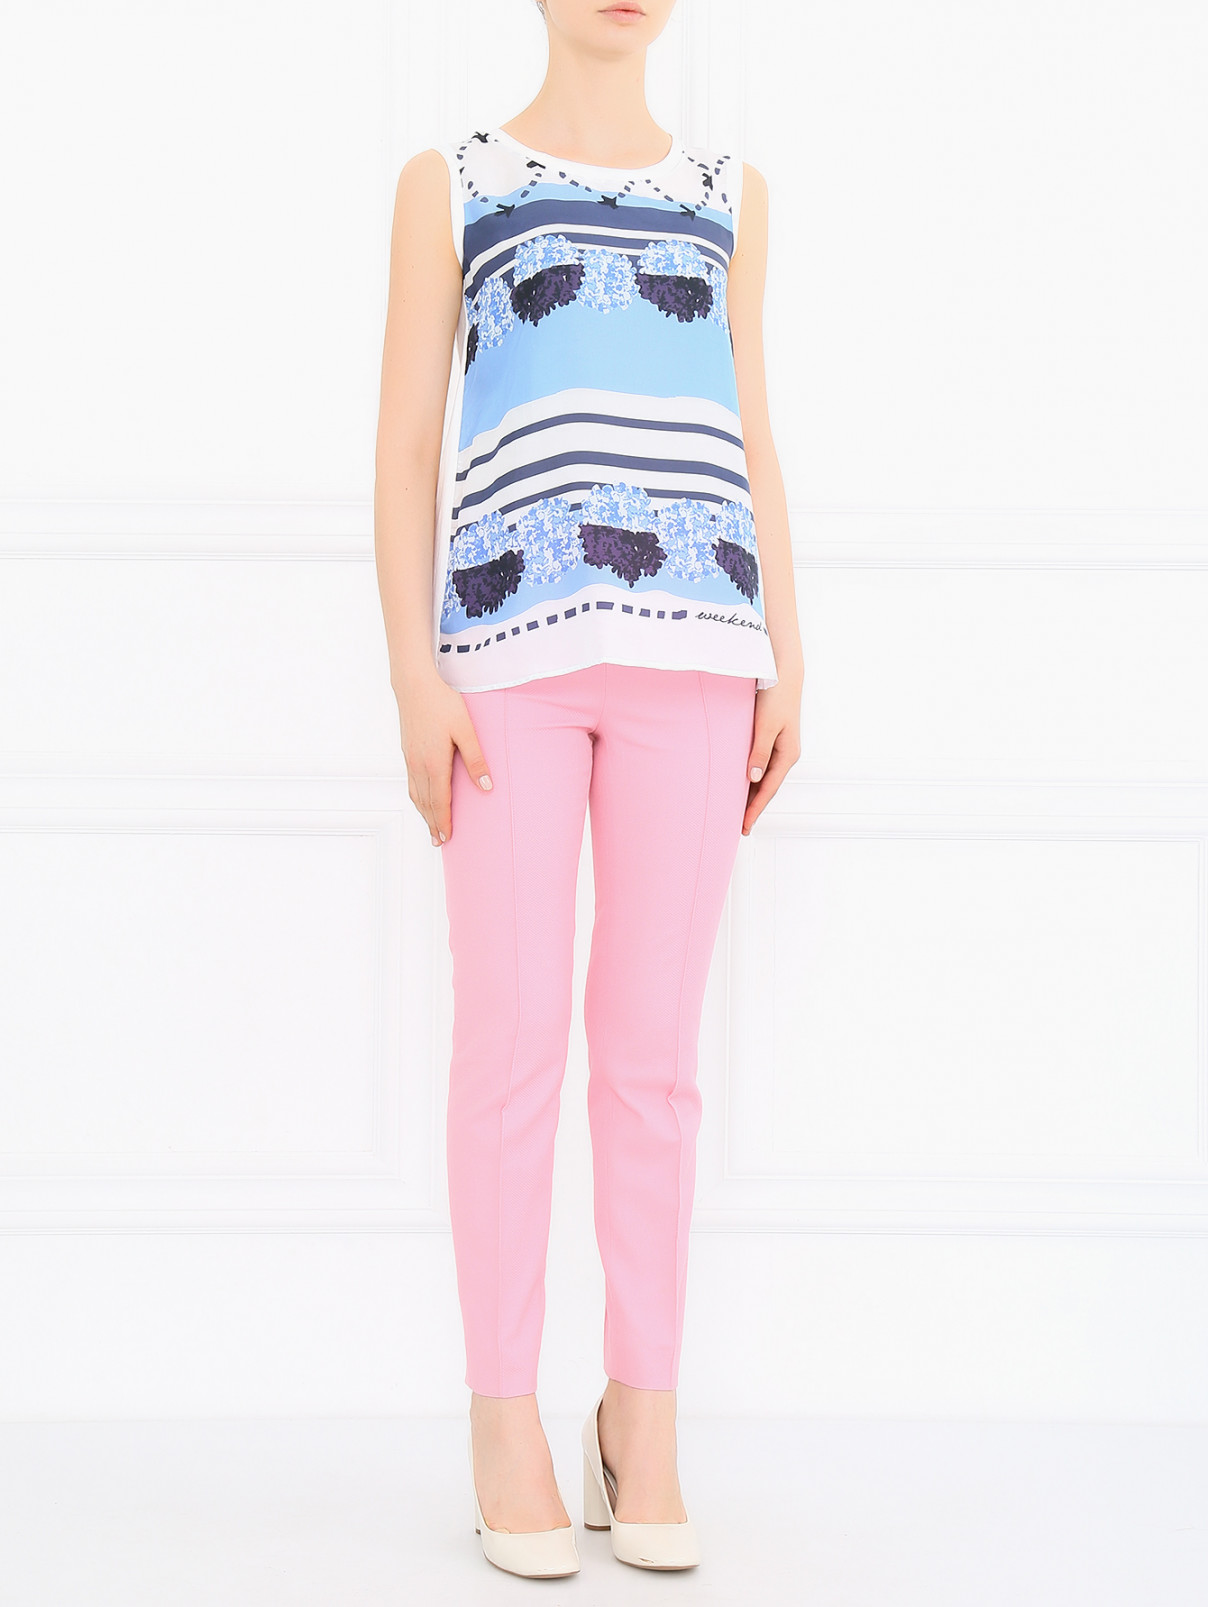 Укороченные брюки из хлопка Moschino Cheap&Chic  –  Модель Общий вид  – Цвет:  Розовый